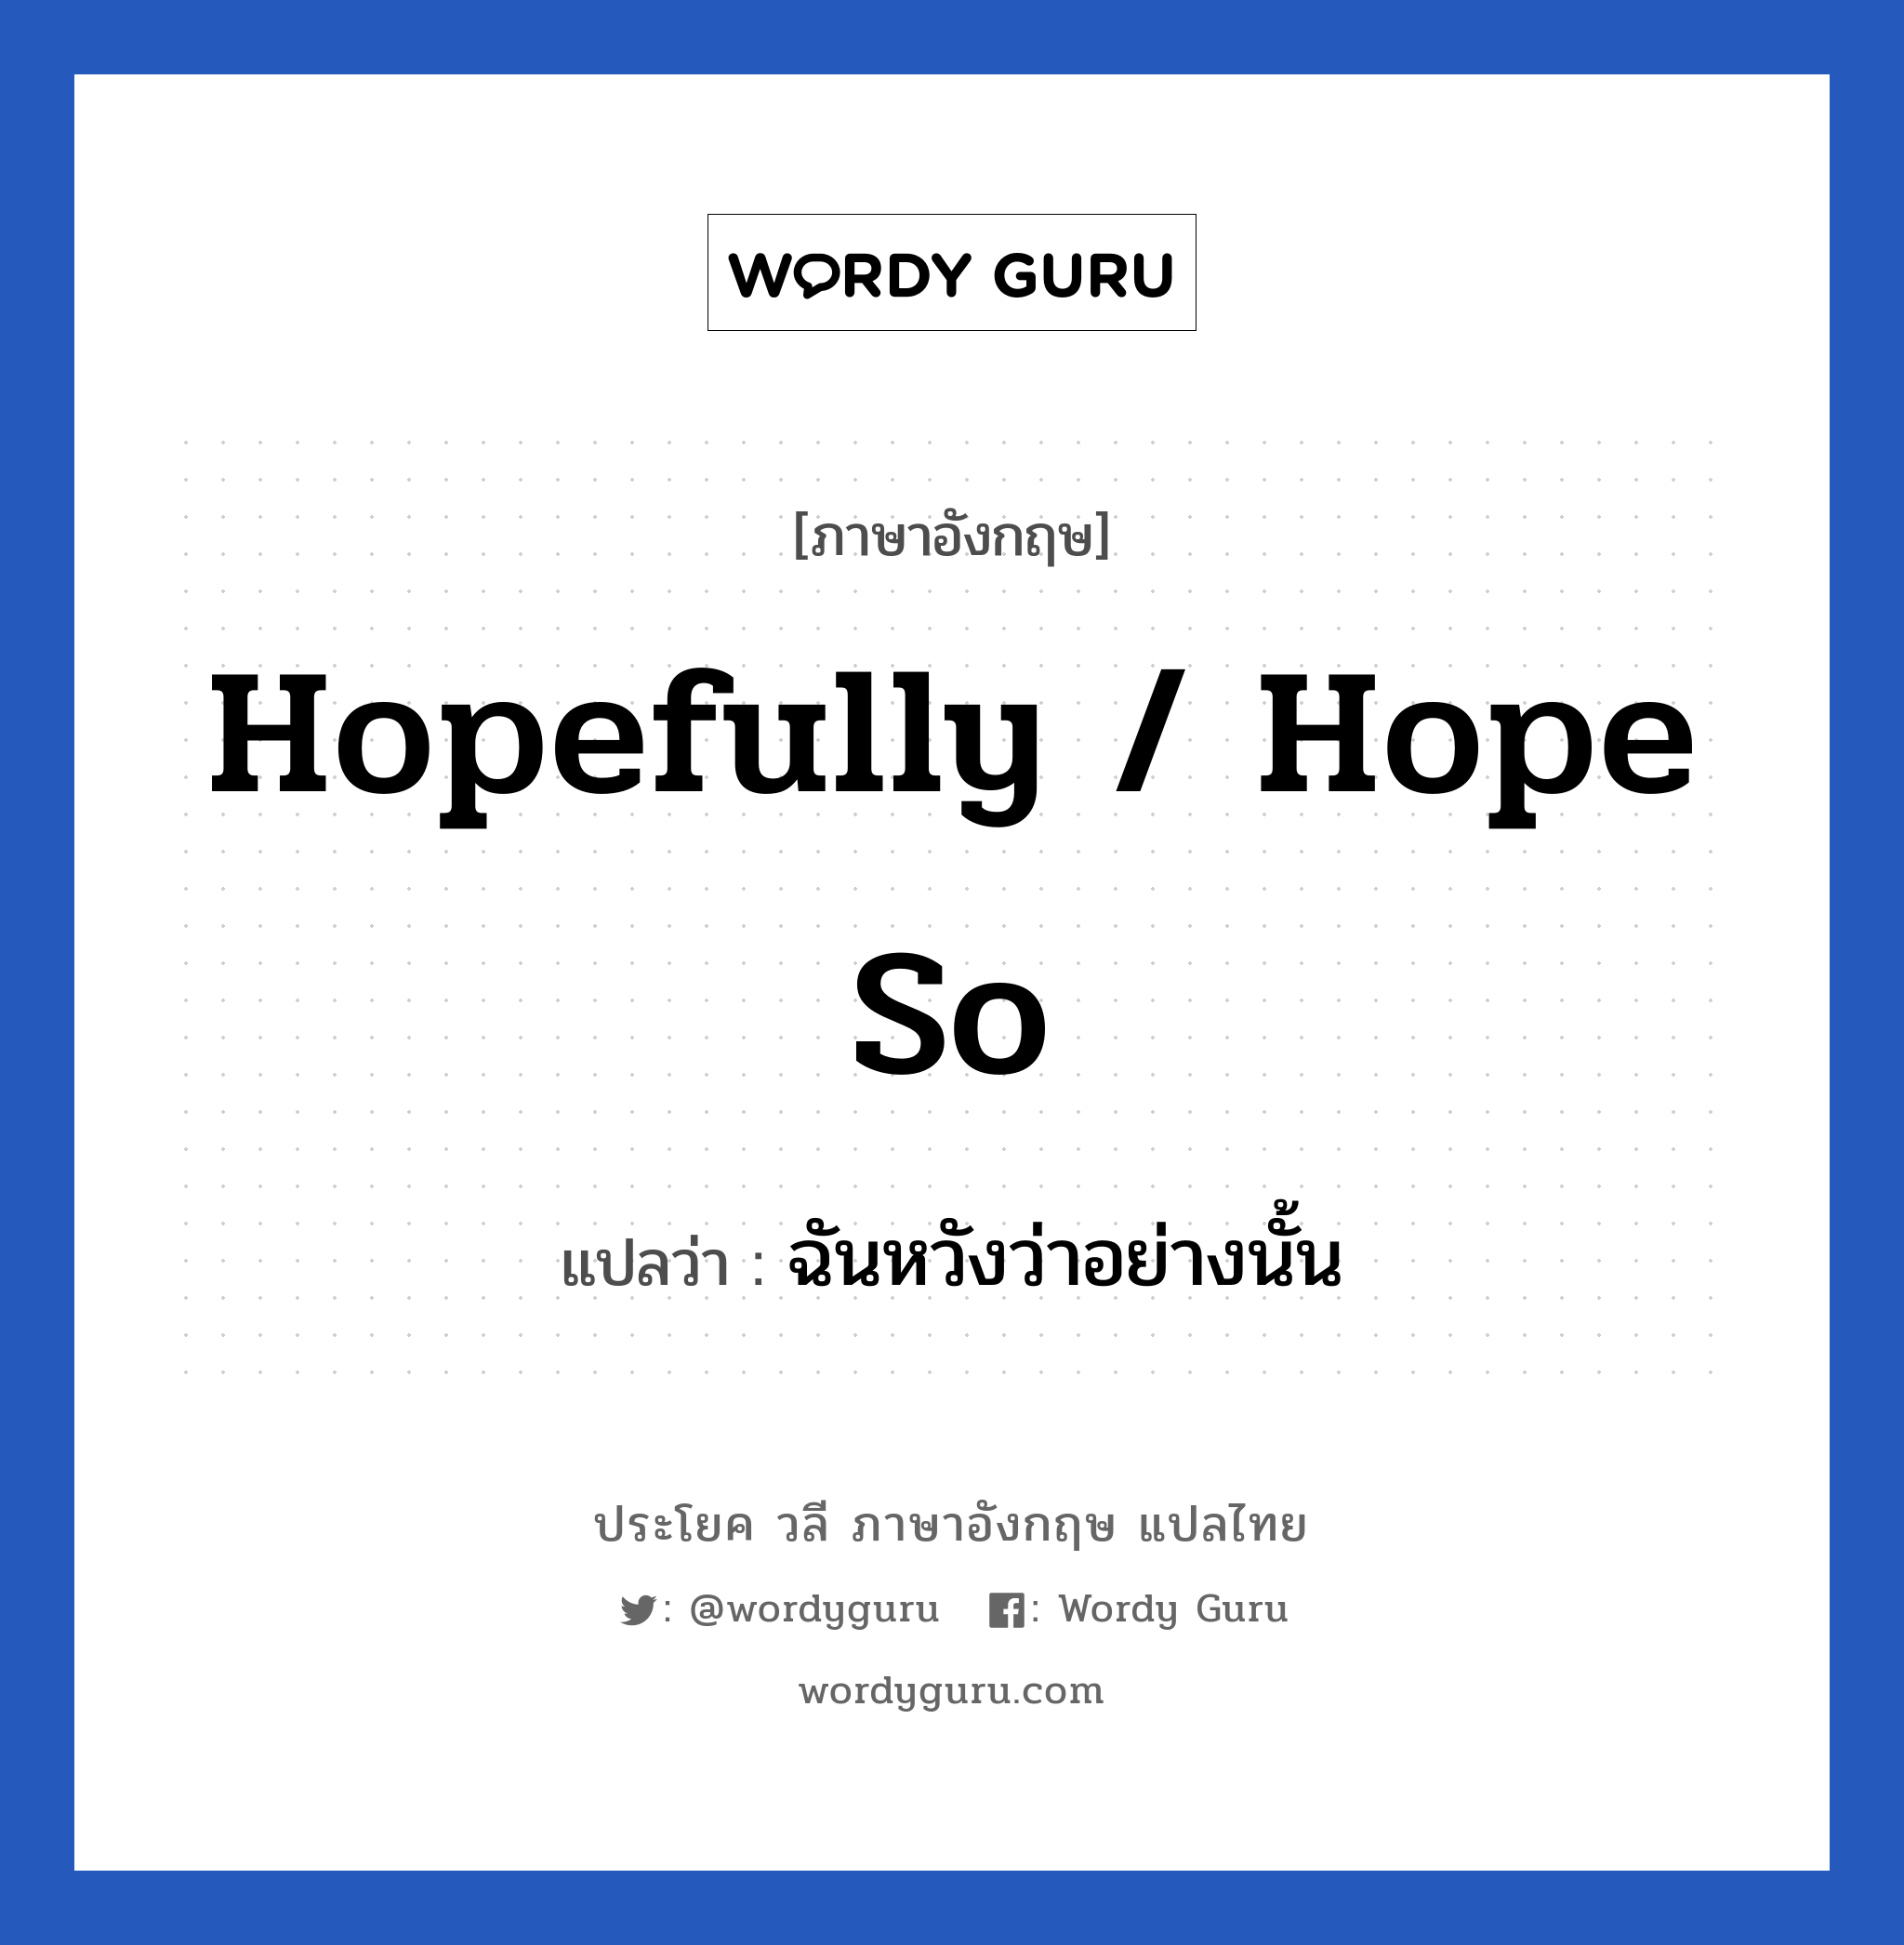 Hopefully / Hope so แปลว่า?, วลีภาษาอังกฤษ Hopefully / Hope so แปลว่า ฉันหวังว่าอย่างนั้น